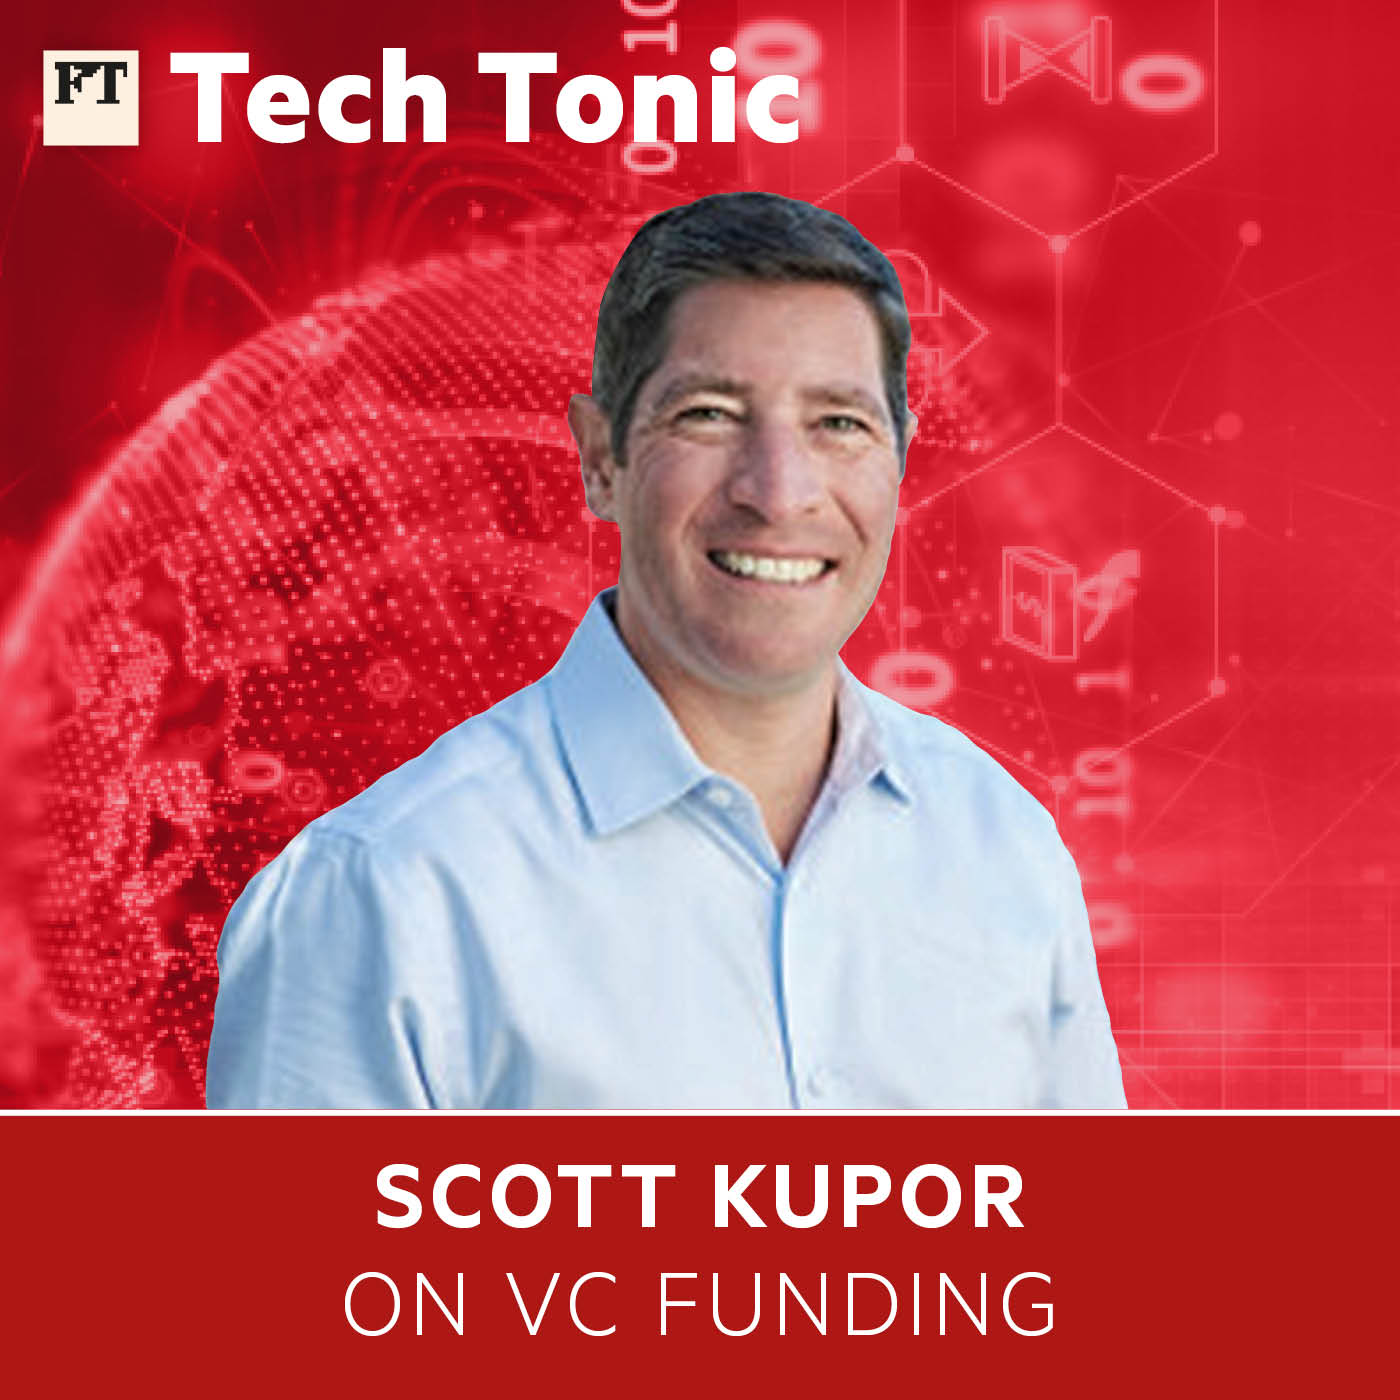 Scott Kupor on VC funding